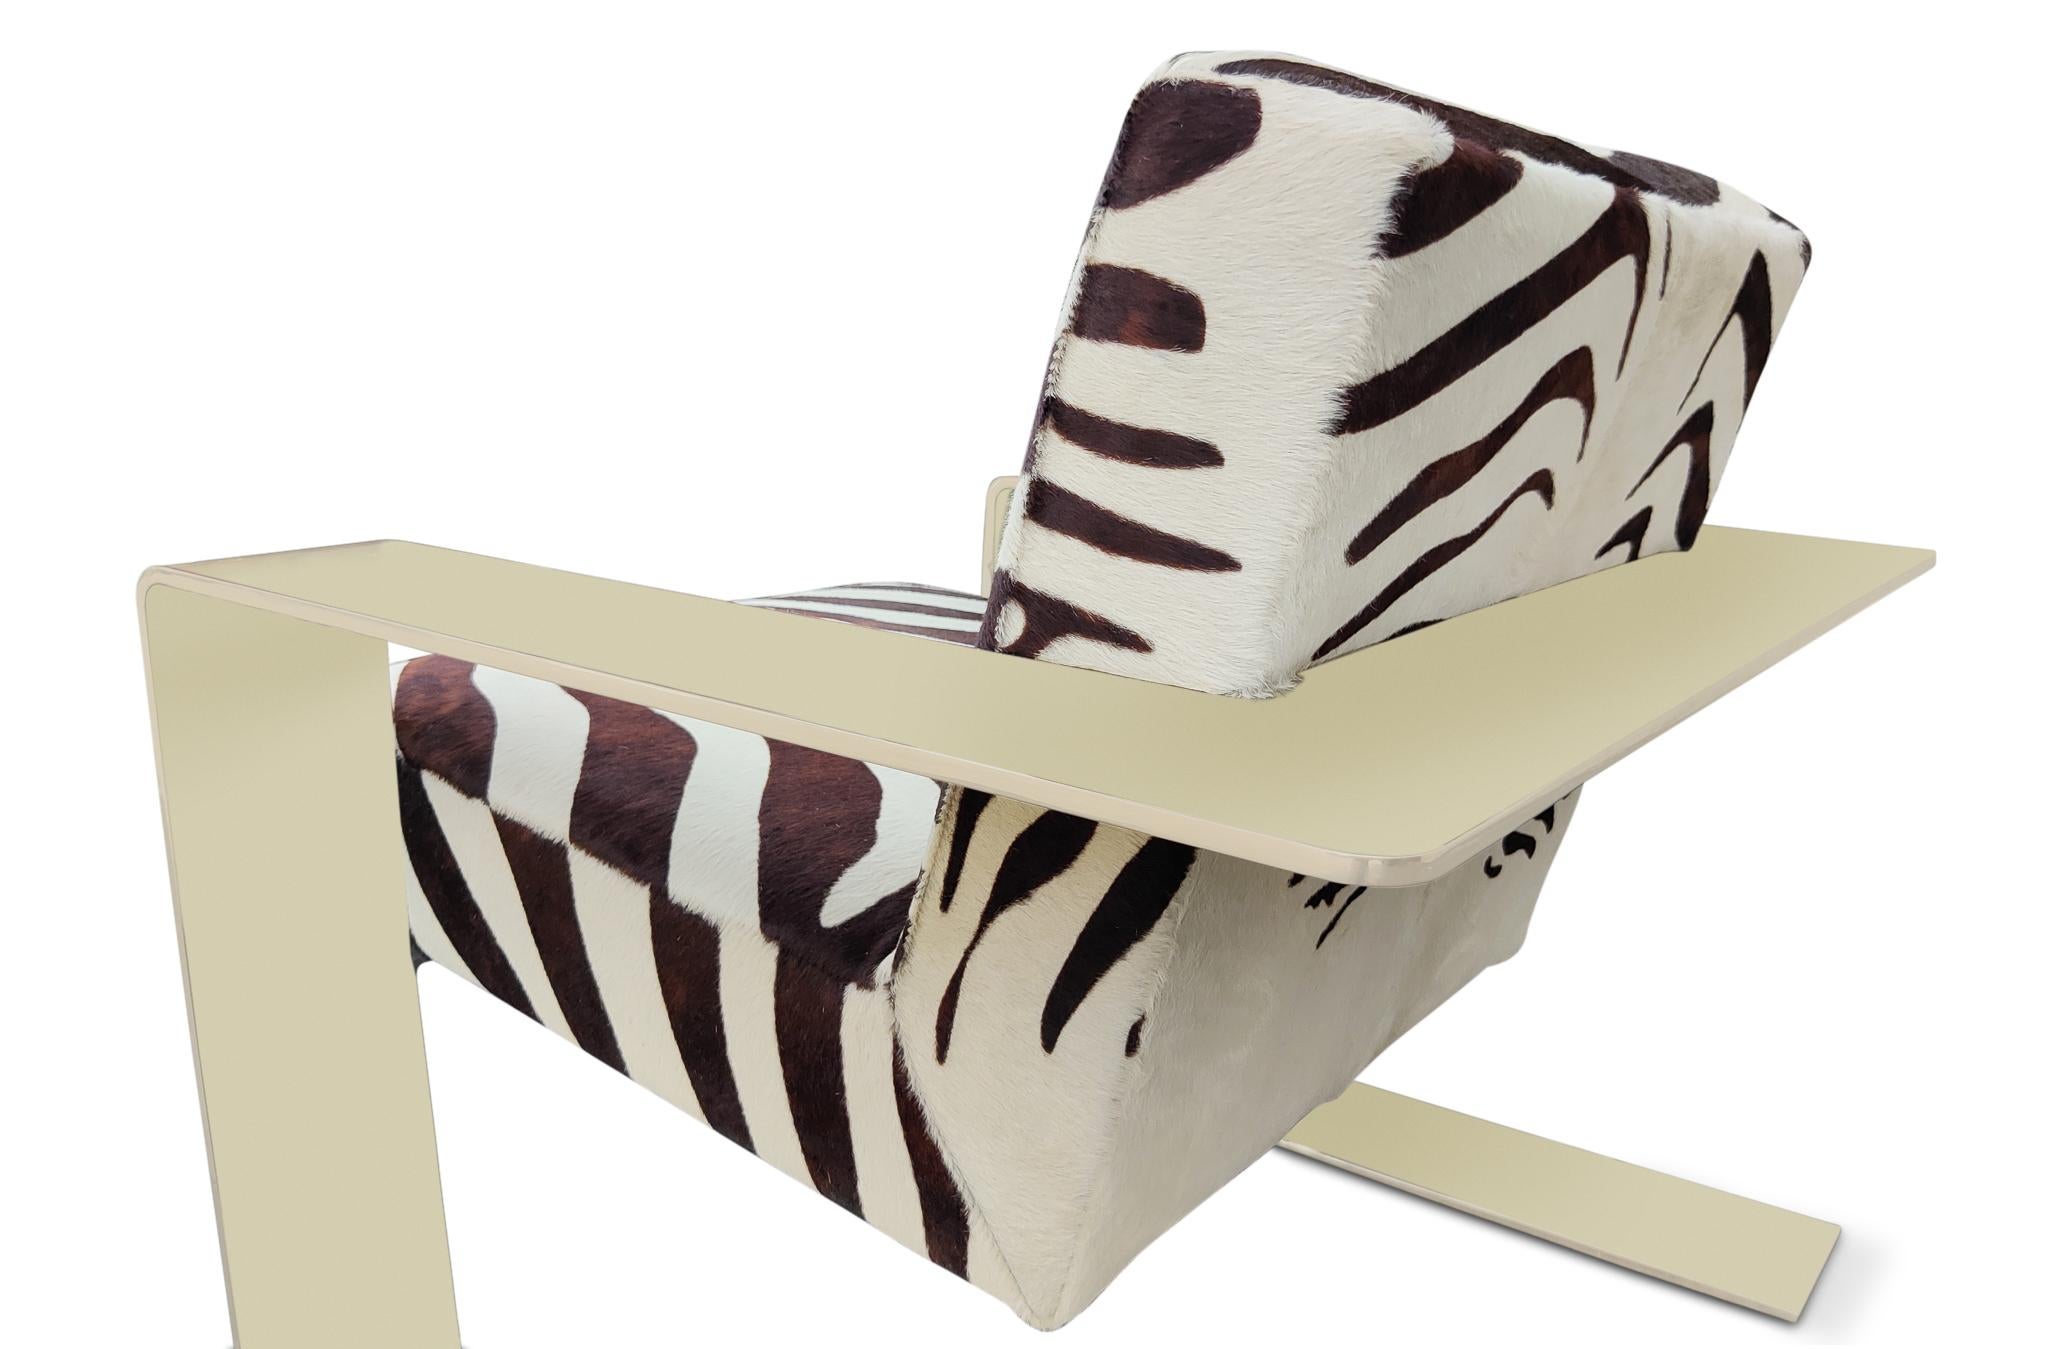 Acier Bernhardt Chaise longue Connor Structure chromée Revêtement en peau de vache imprimé zèbre